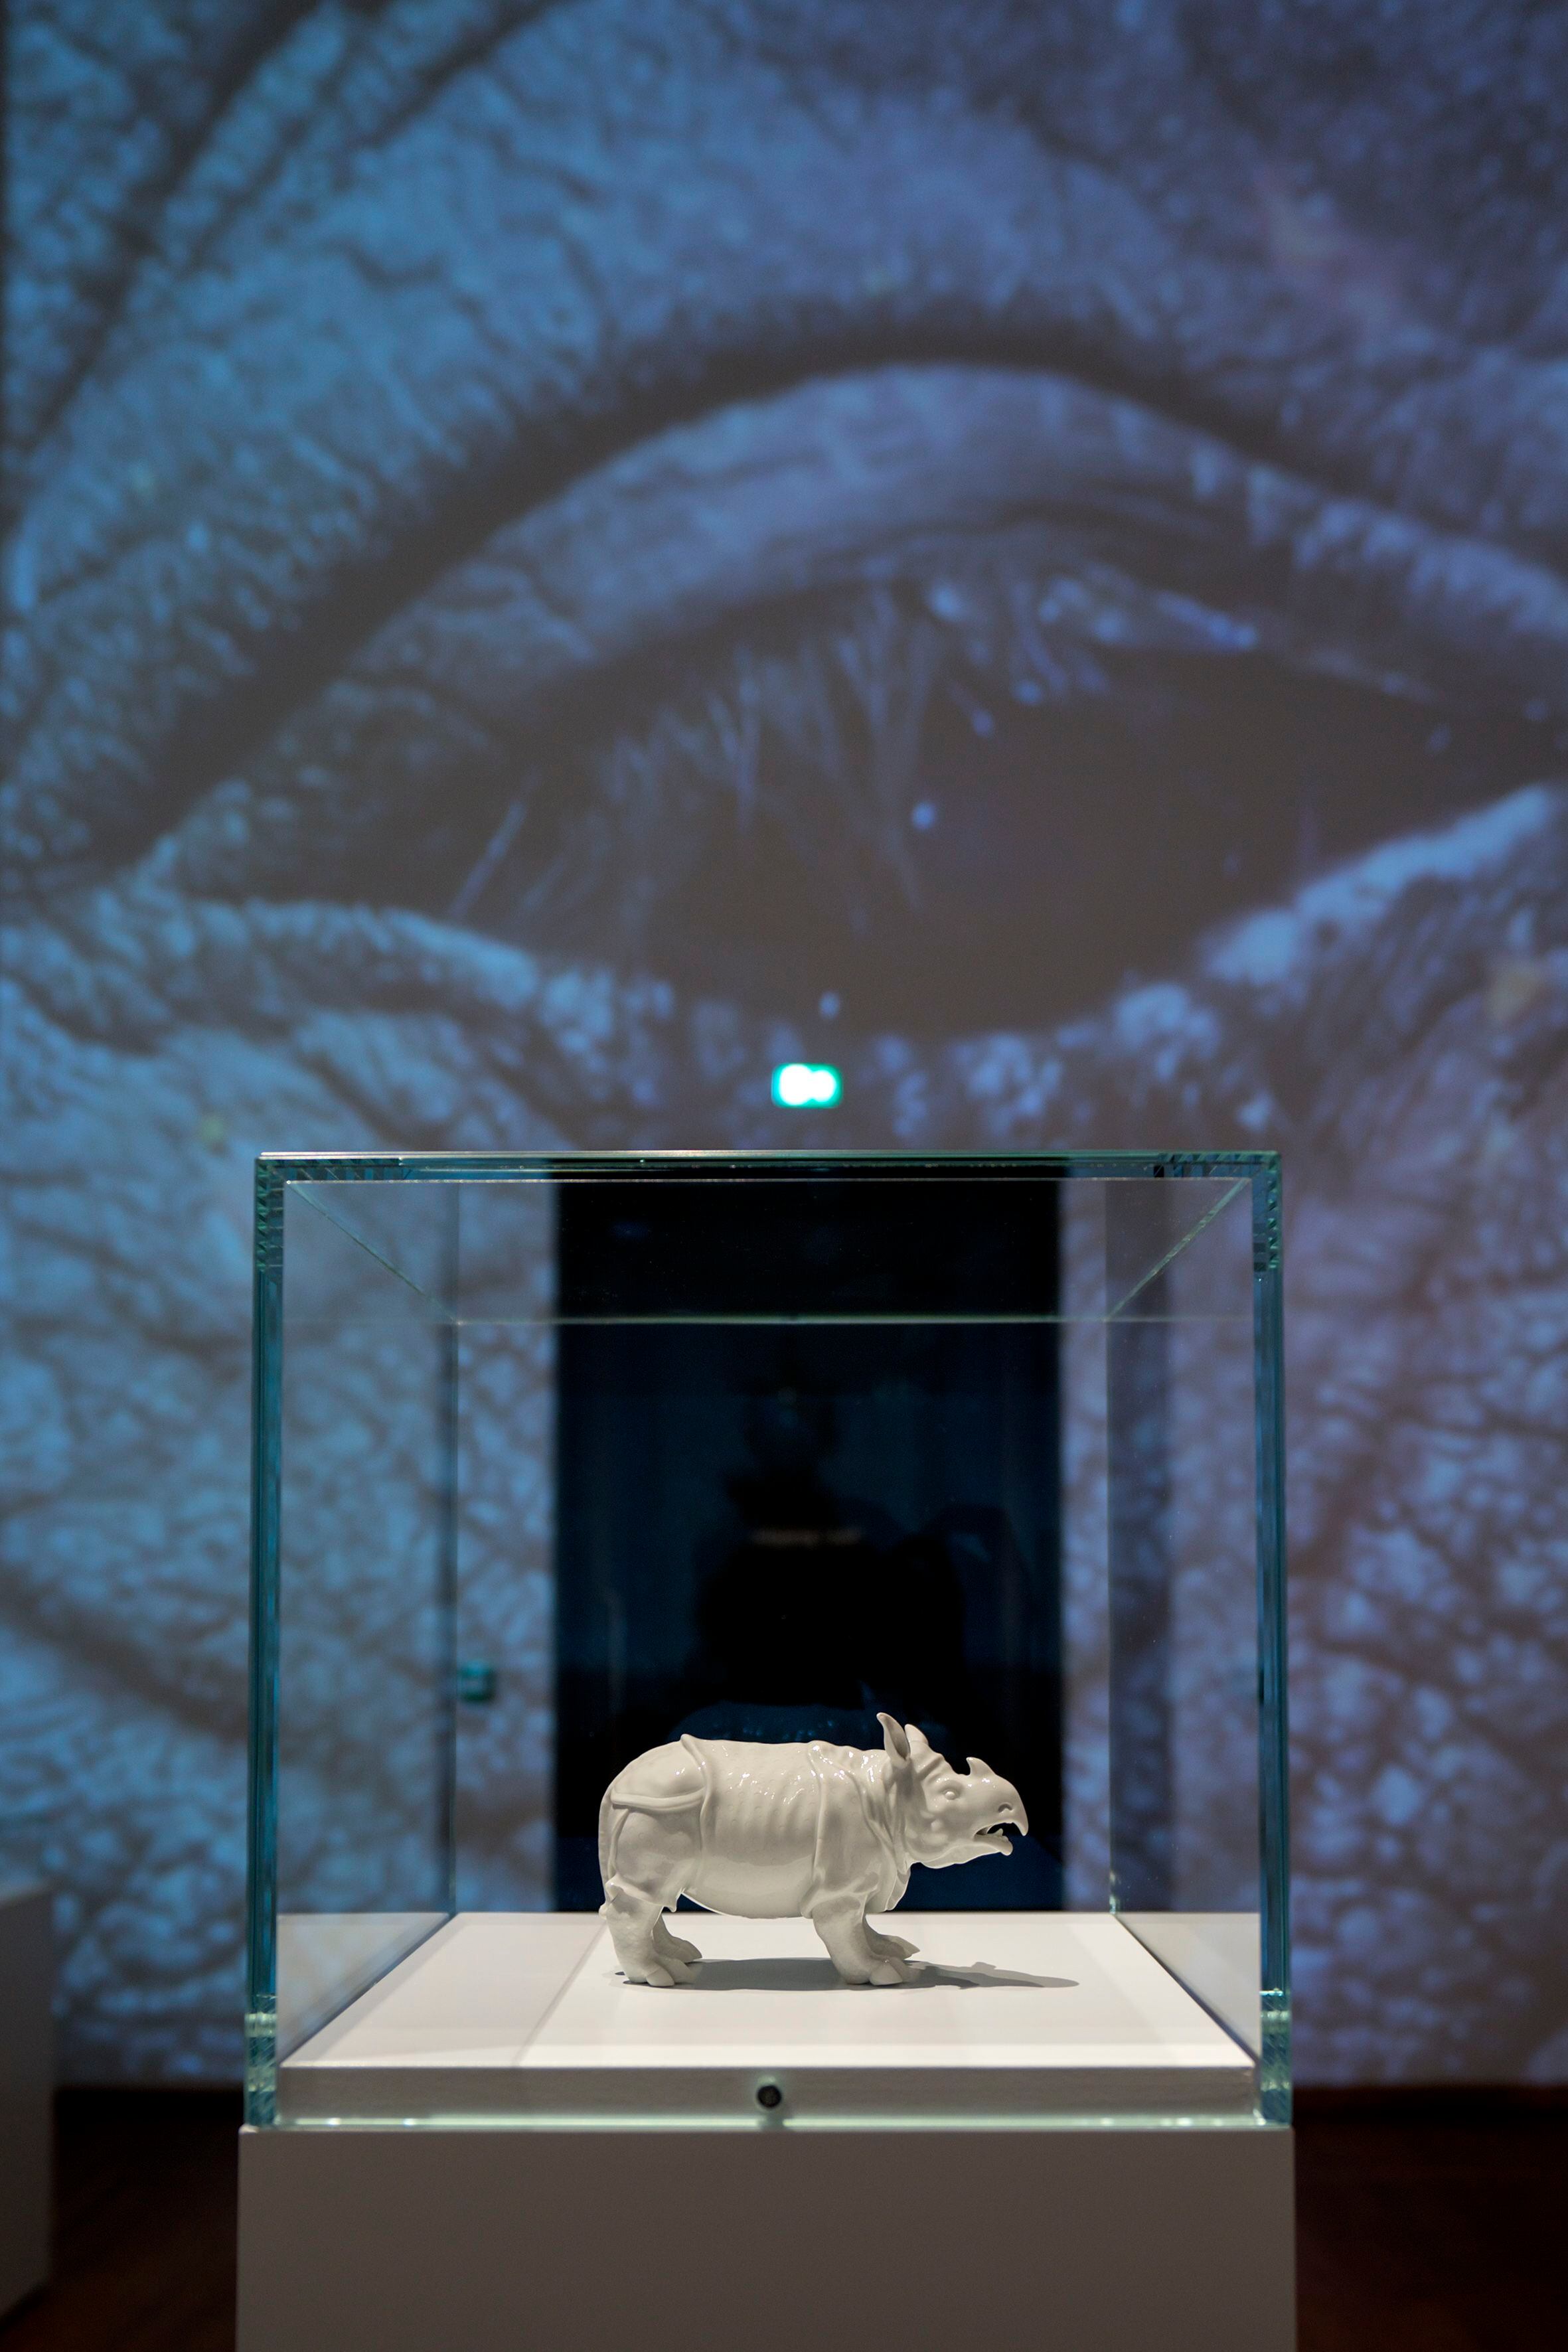 Exposición sobre la hembra de rinoceronte Clara en el Rijksmuseum (Ámsterdam).